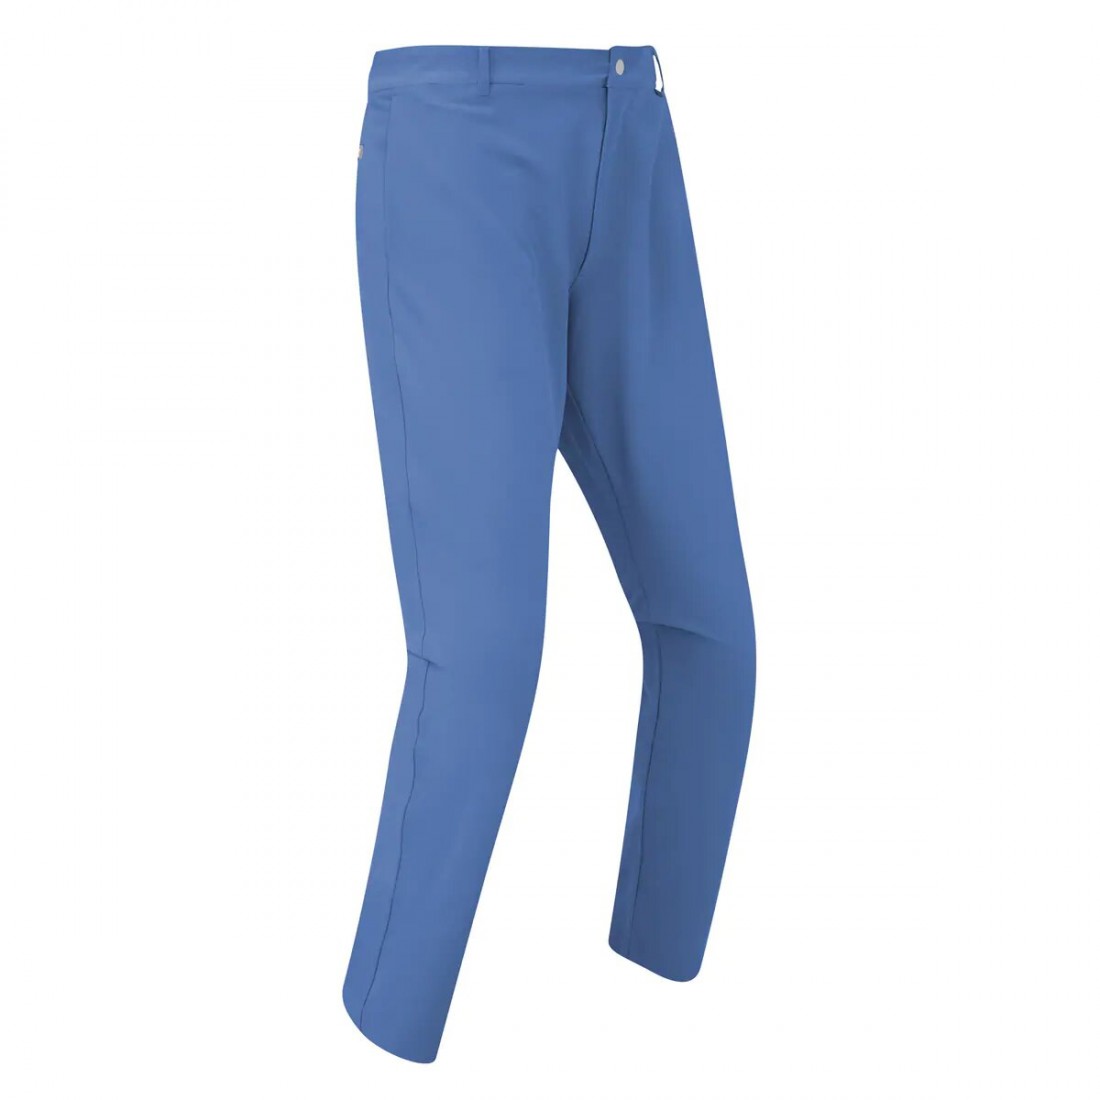 Footjoy pantalon FJ Lite Slim fit bleu